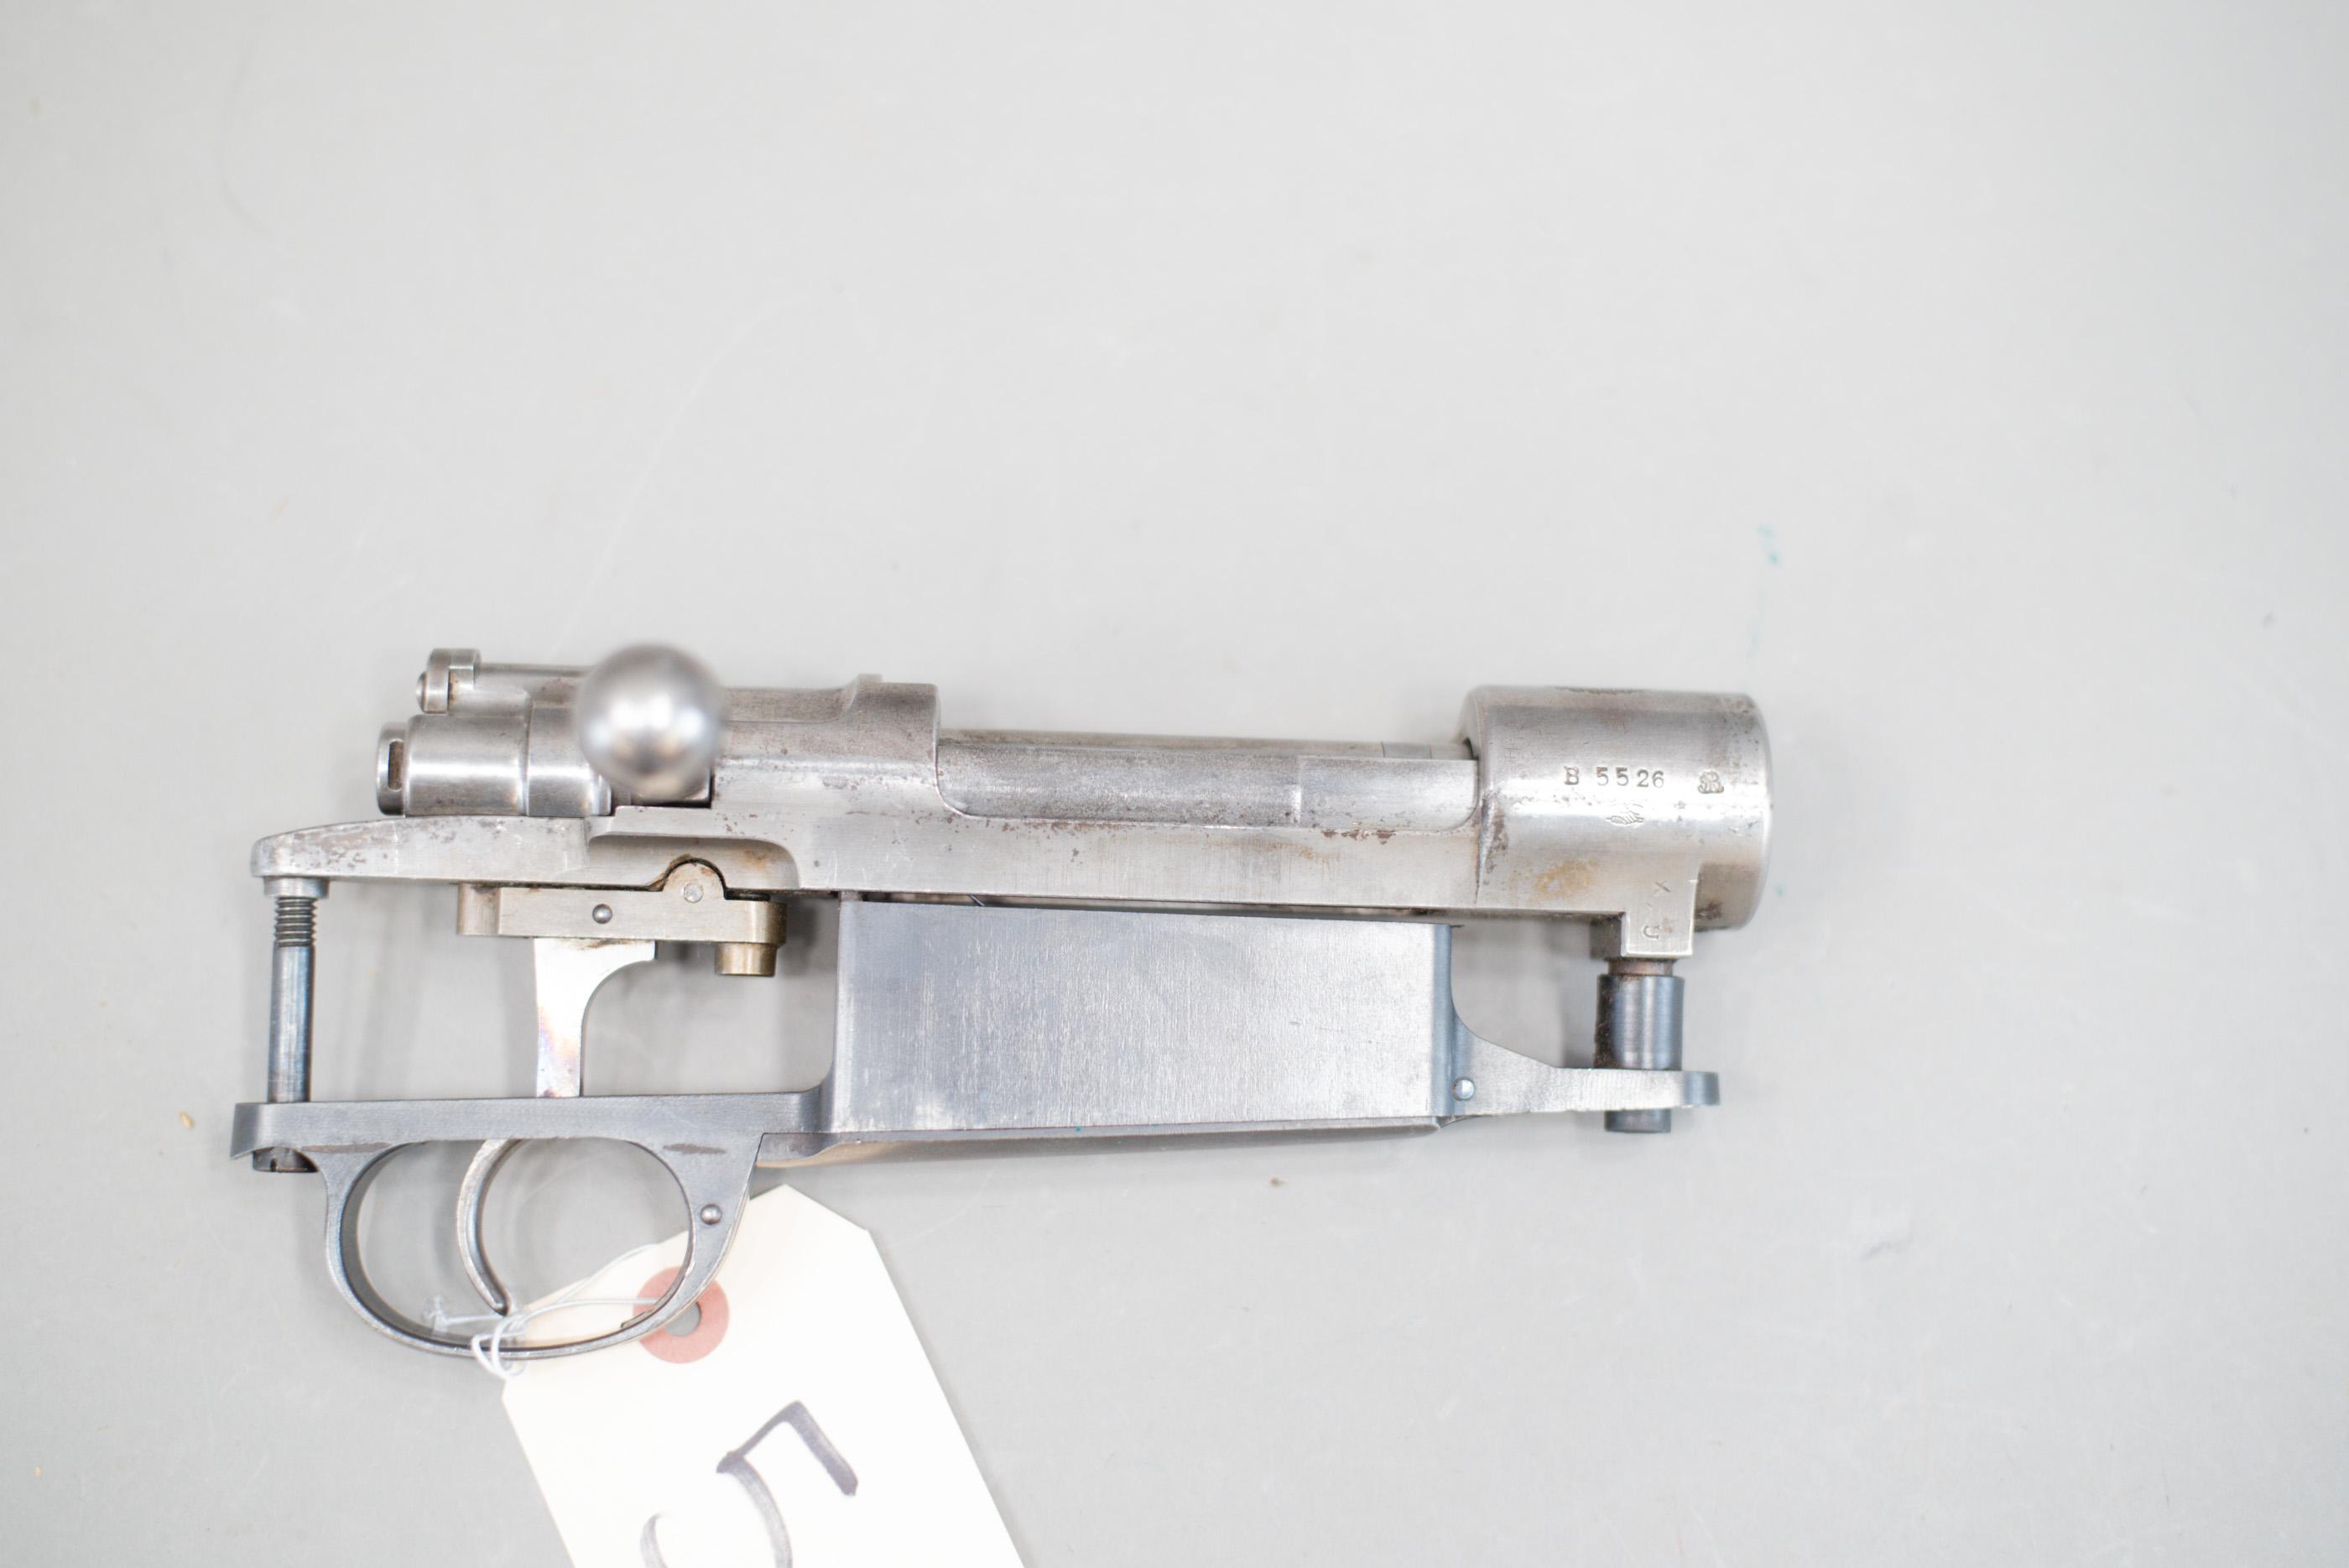 (CR) DWM Argentine Mauser Mod 1909 Rifle Receiver